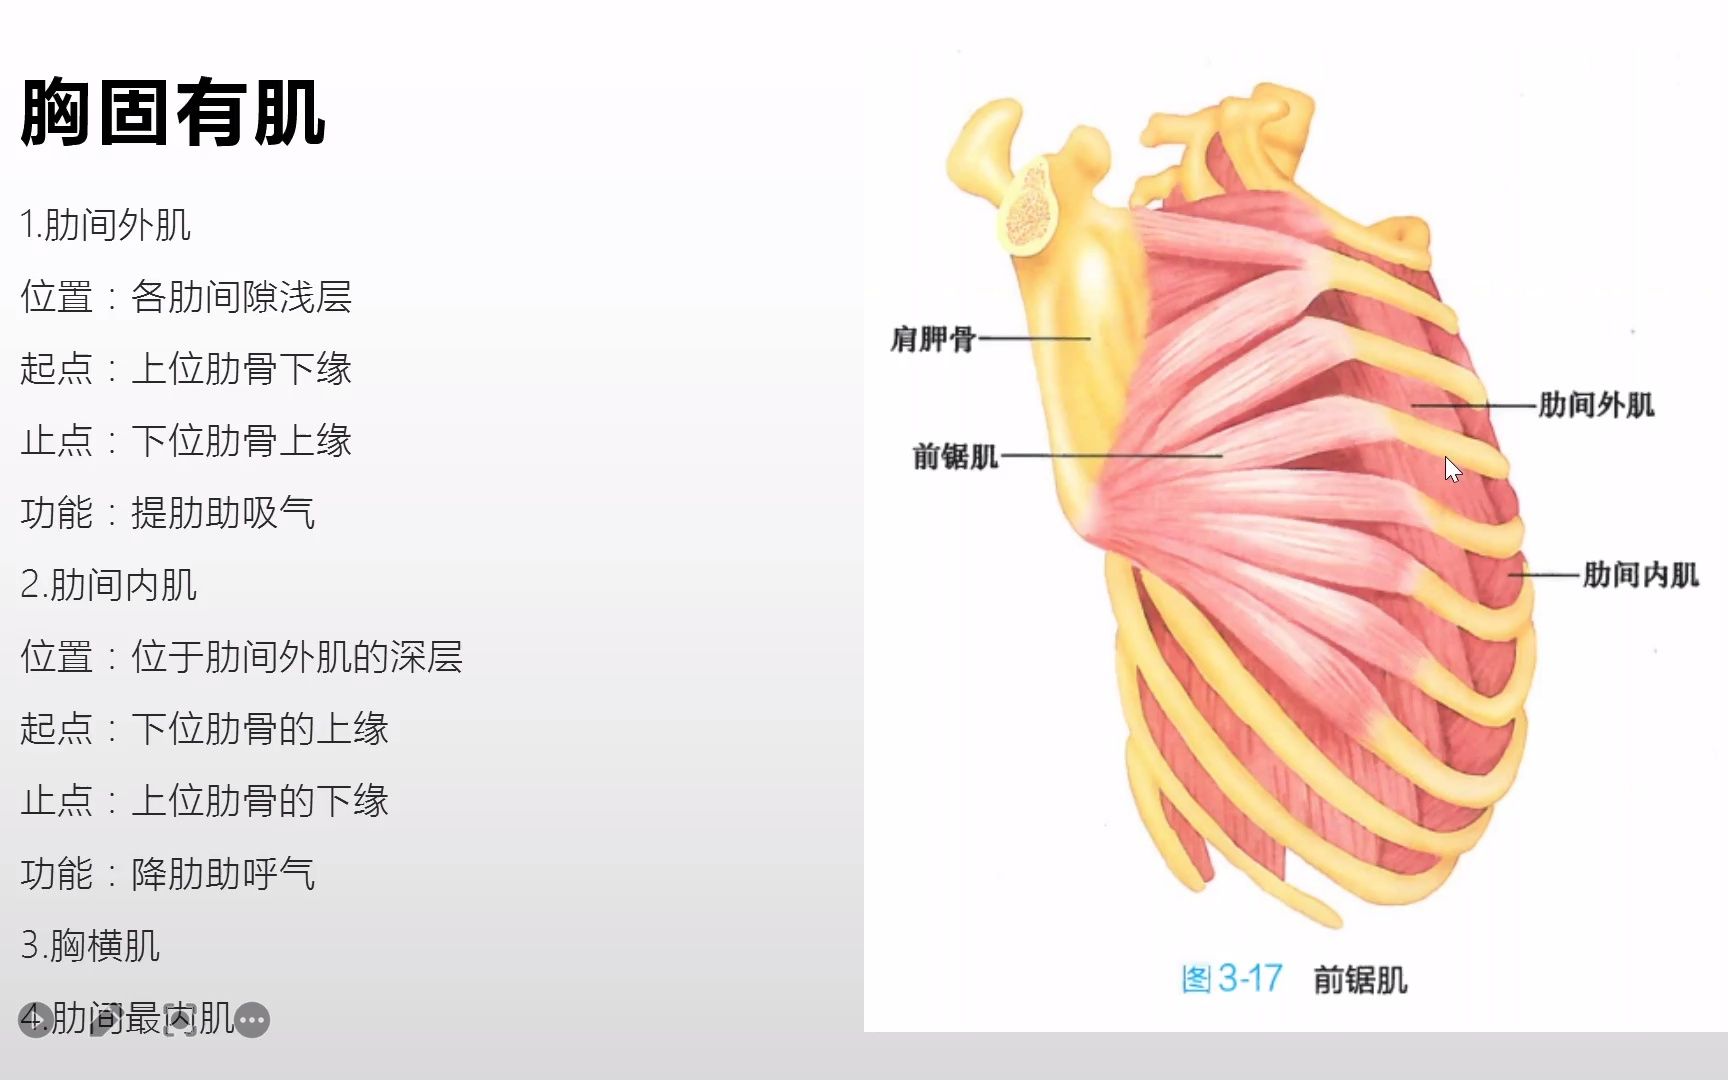 活动作品系统解剖学躯干肌之胸肌的胸固有肌和膈肌